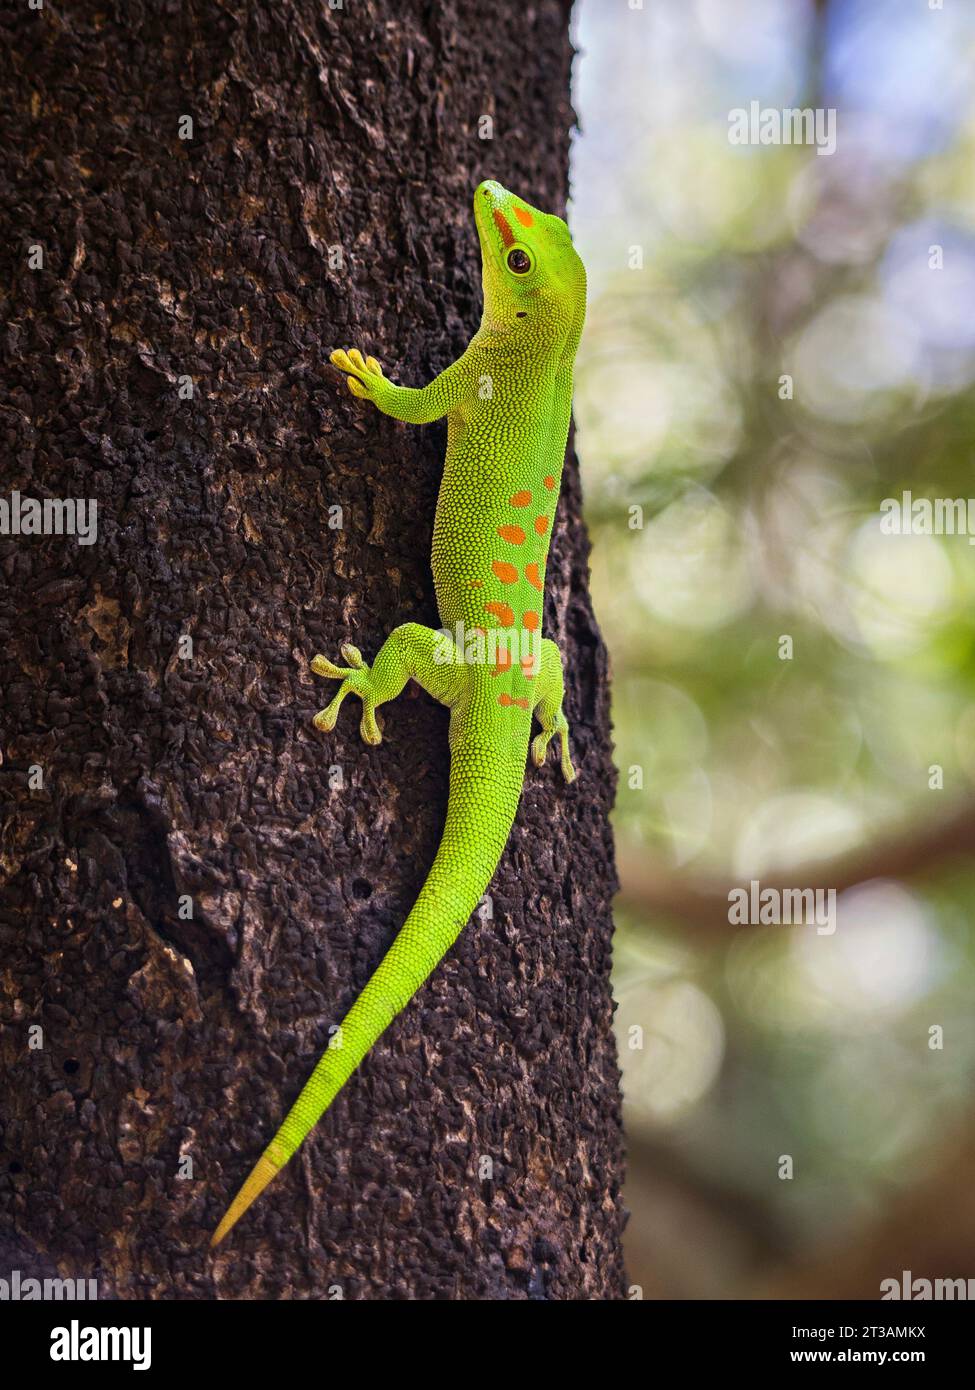 Un Gecko de jour géant de Madagascar vert vibrant (Phelsuma grandis) assis sur un tronc d'arbre Banque D'Images